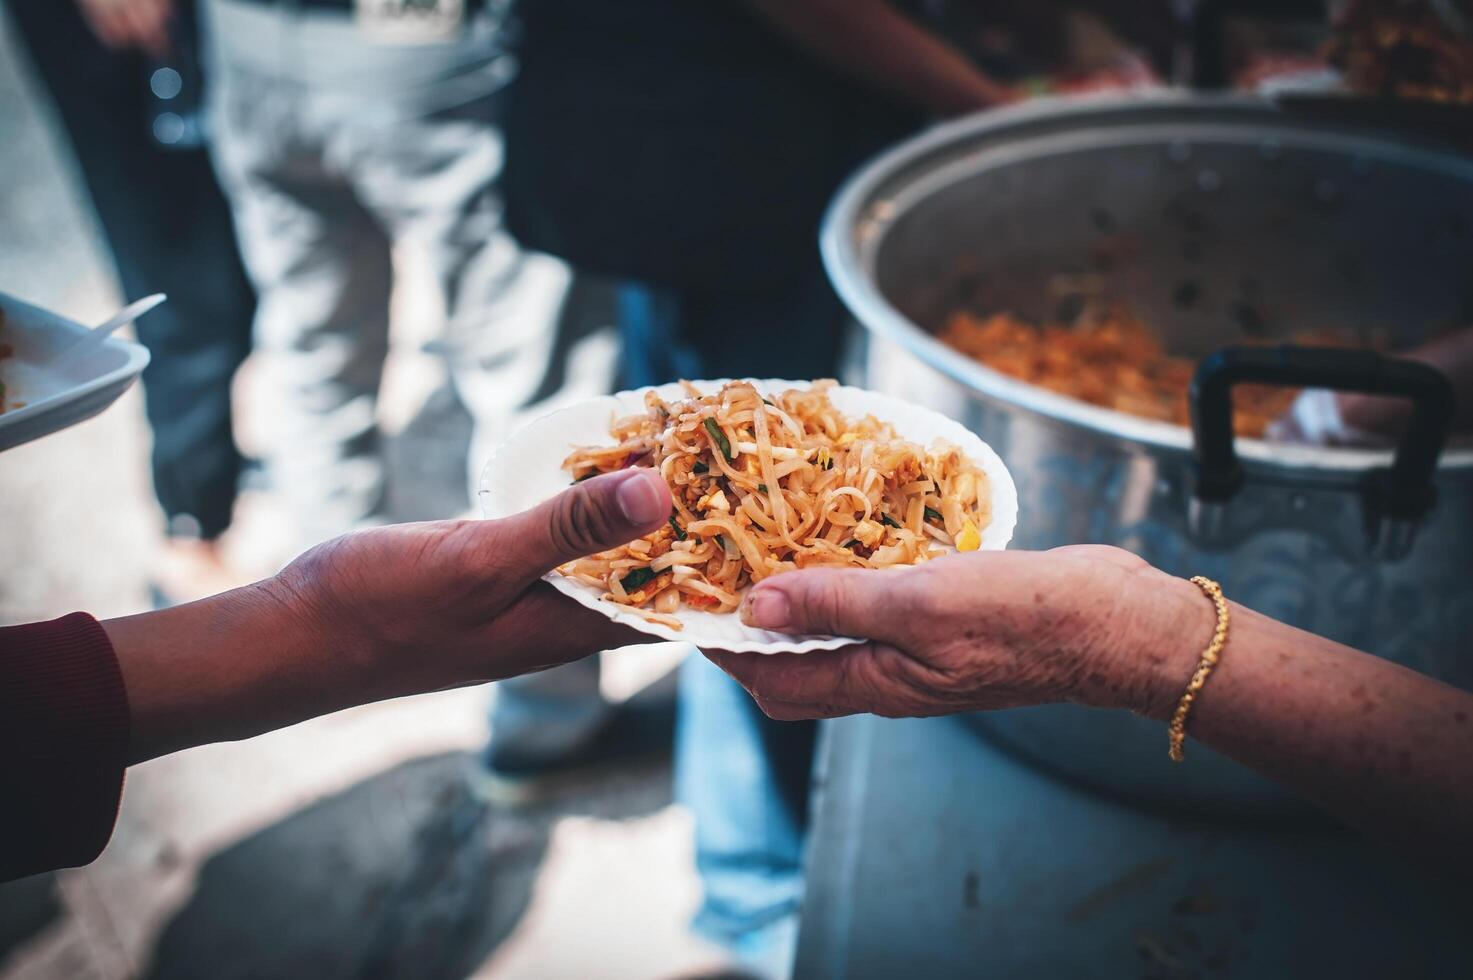 voluntários servindo quente refeições para com fome migrantes humanitário ajuda conceito. foto